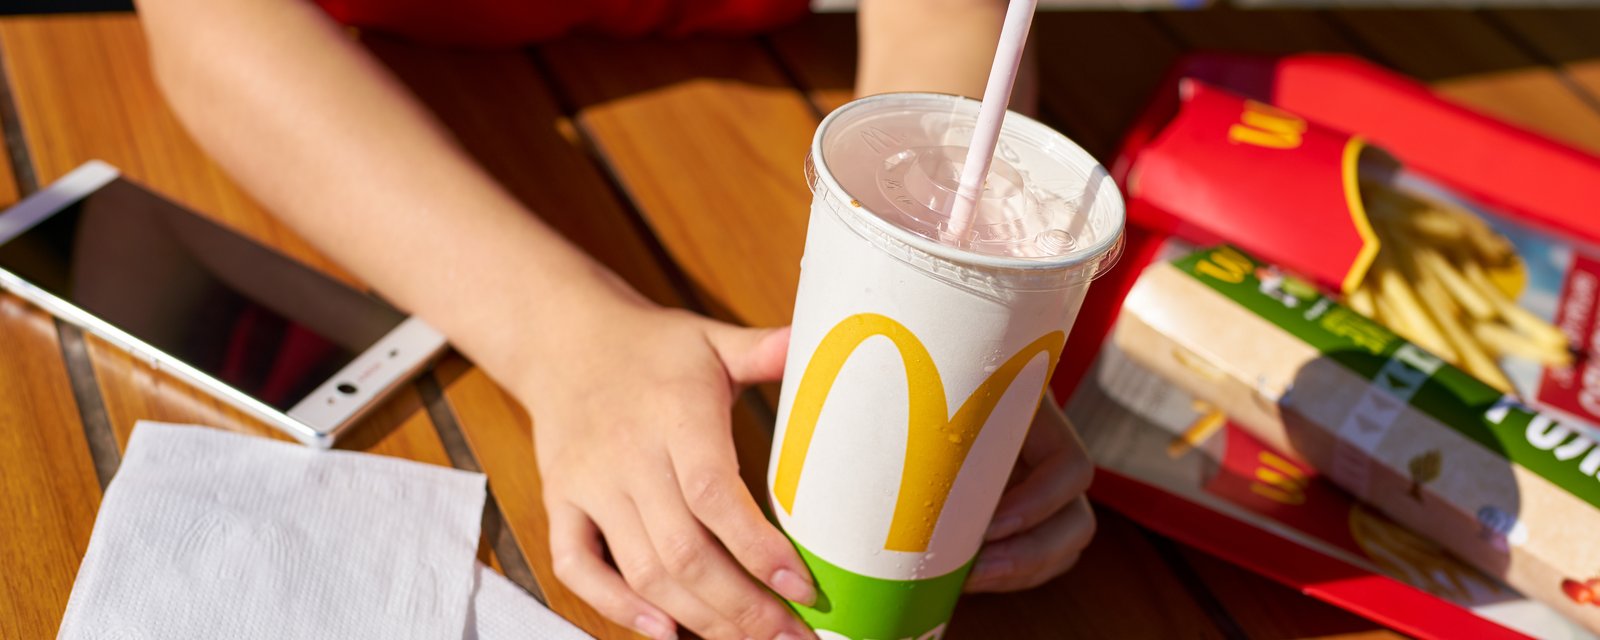 Voici pourquoi le Coca-Cola chez McDonald's ne goûte pas pareil comme à la maison